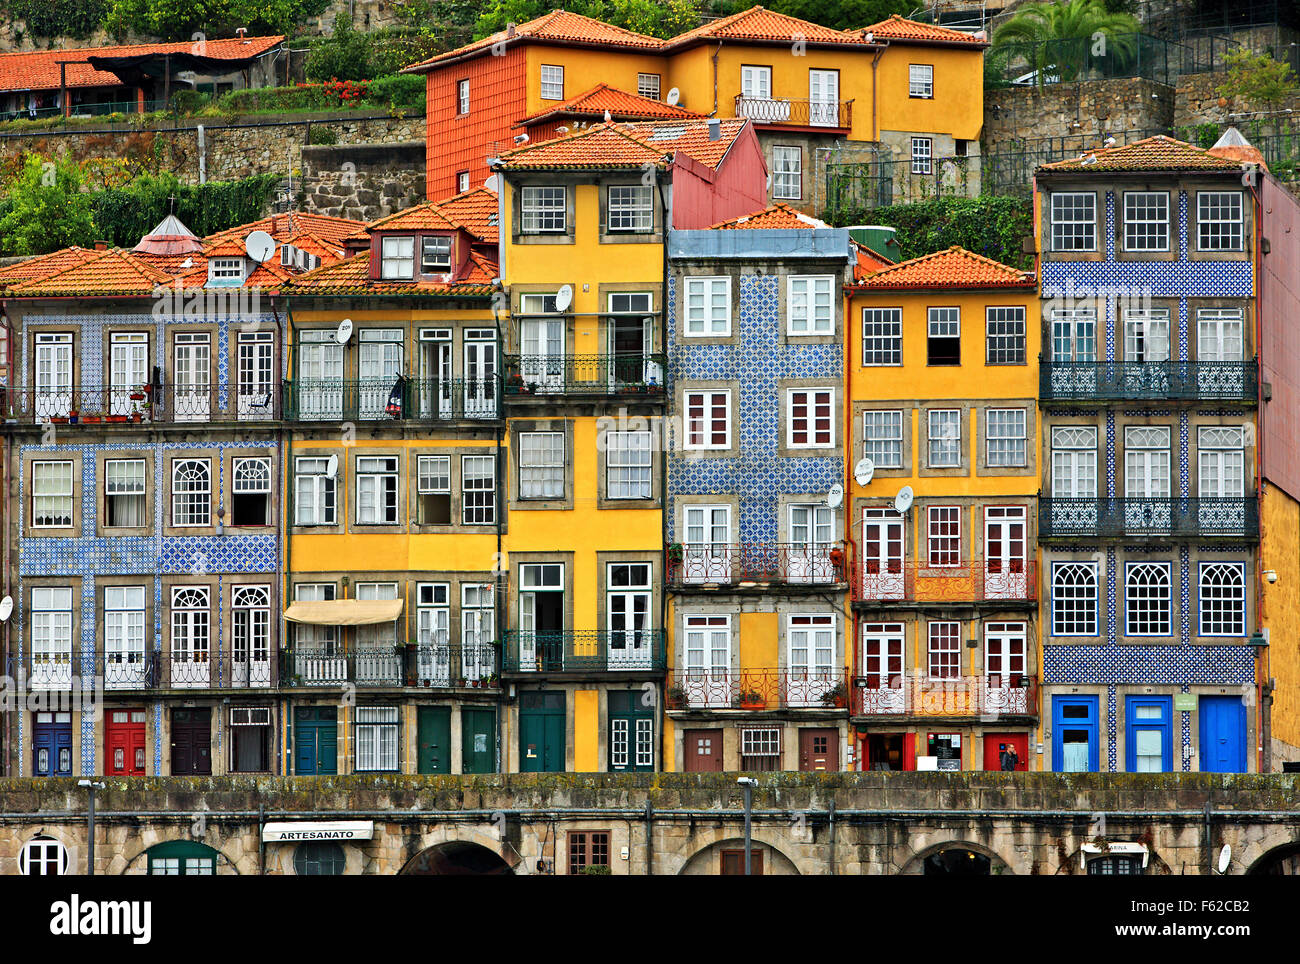 La Ribeira (Sito del Patrimonio Culturale Mondiale dell'UNESCO), la parte più bella di Porto, Portogallo. Foto Stock